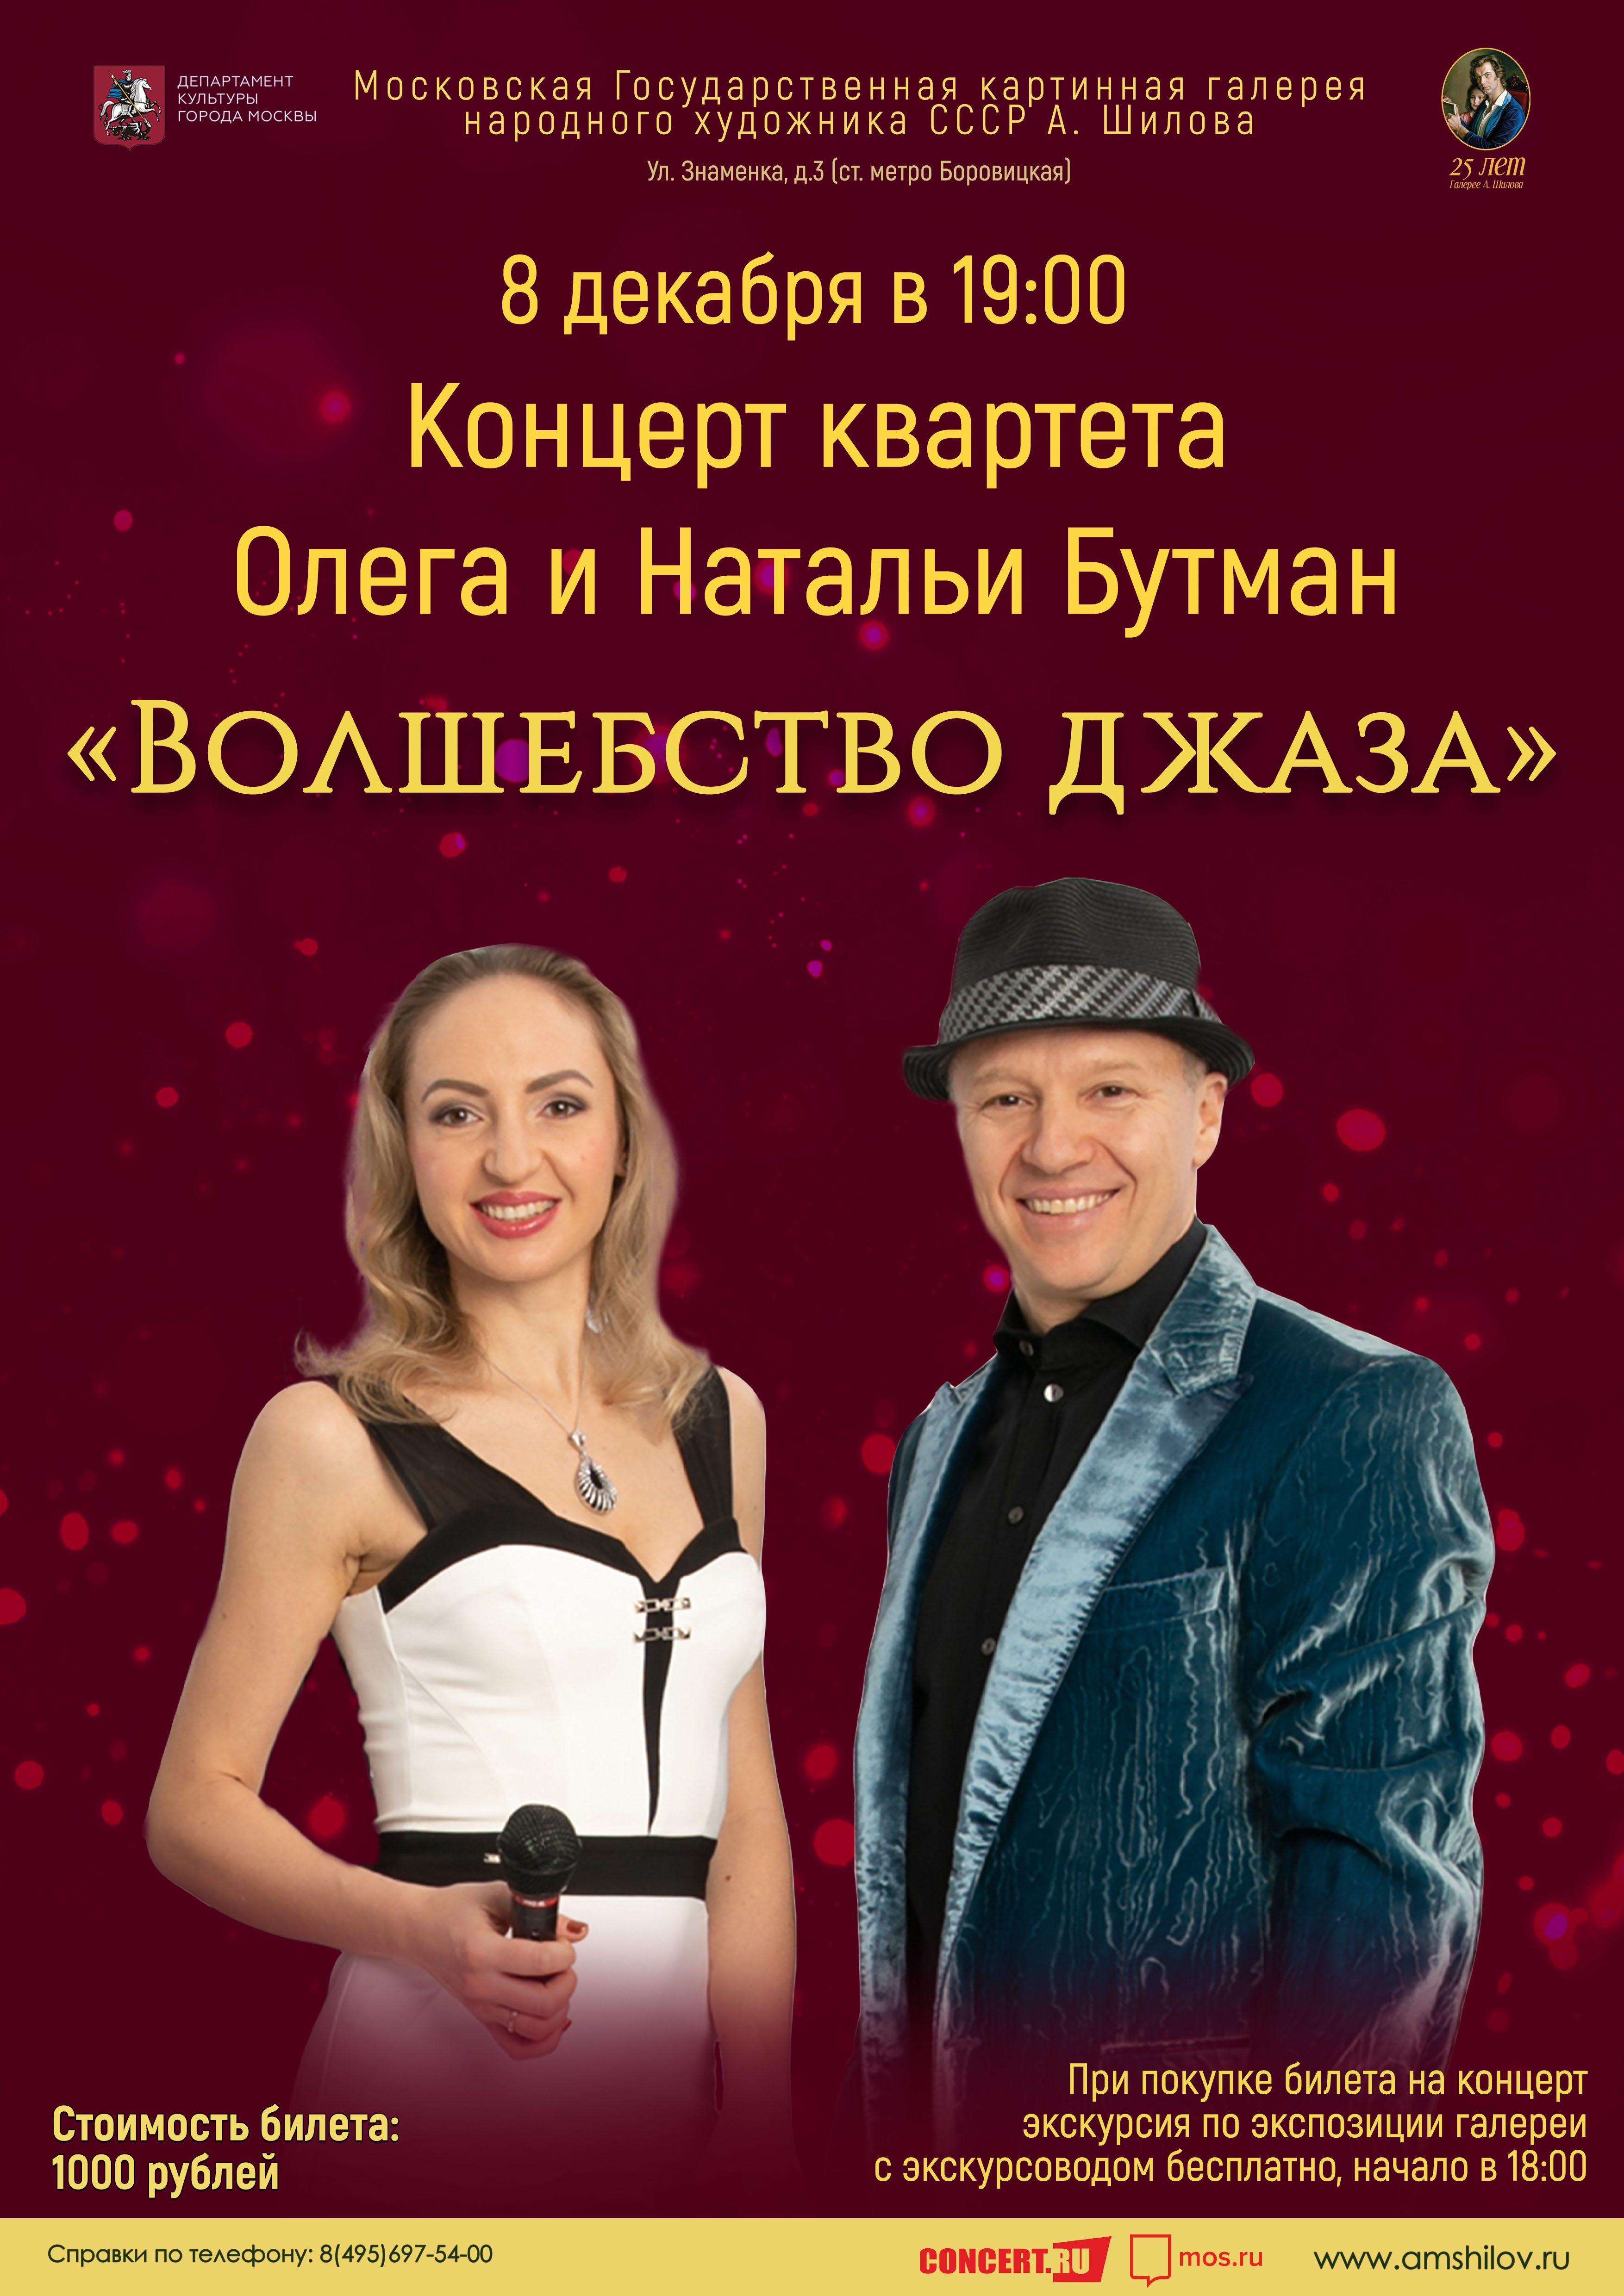 Концерт квартета Олега и Натальи Бутман  «Волшебство джаза» 